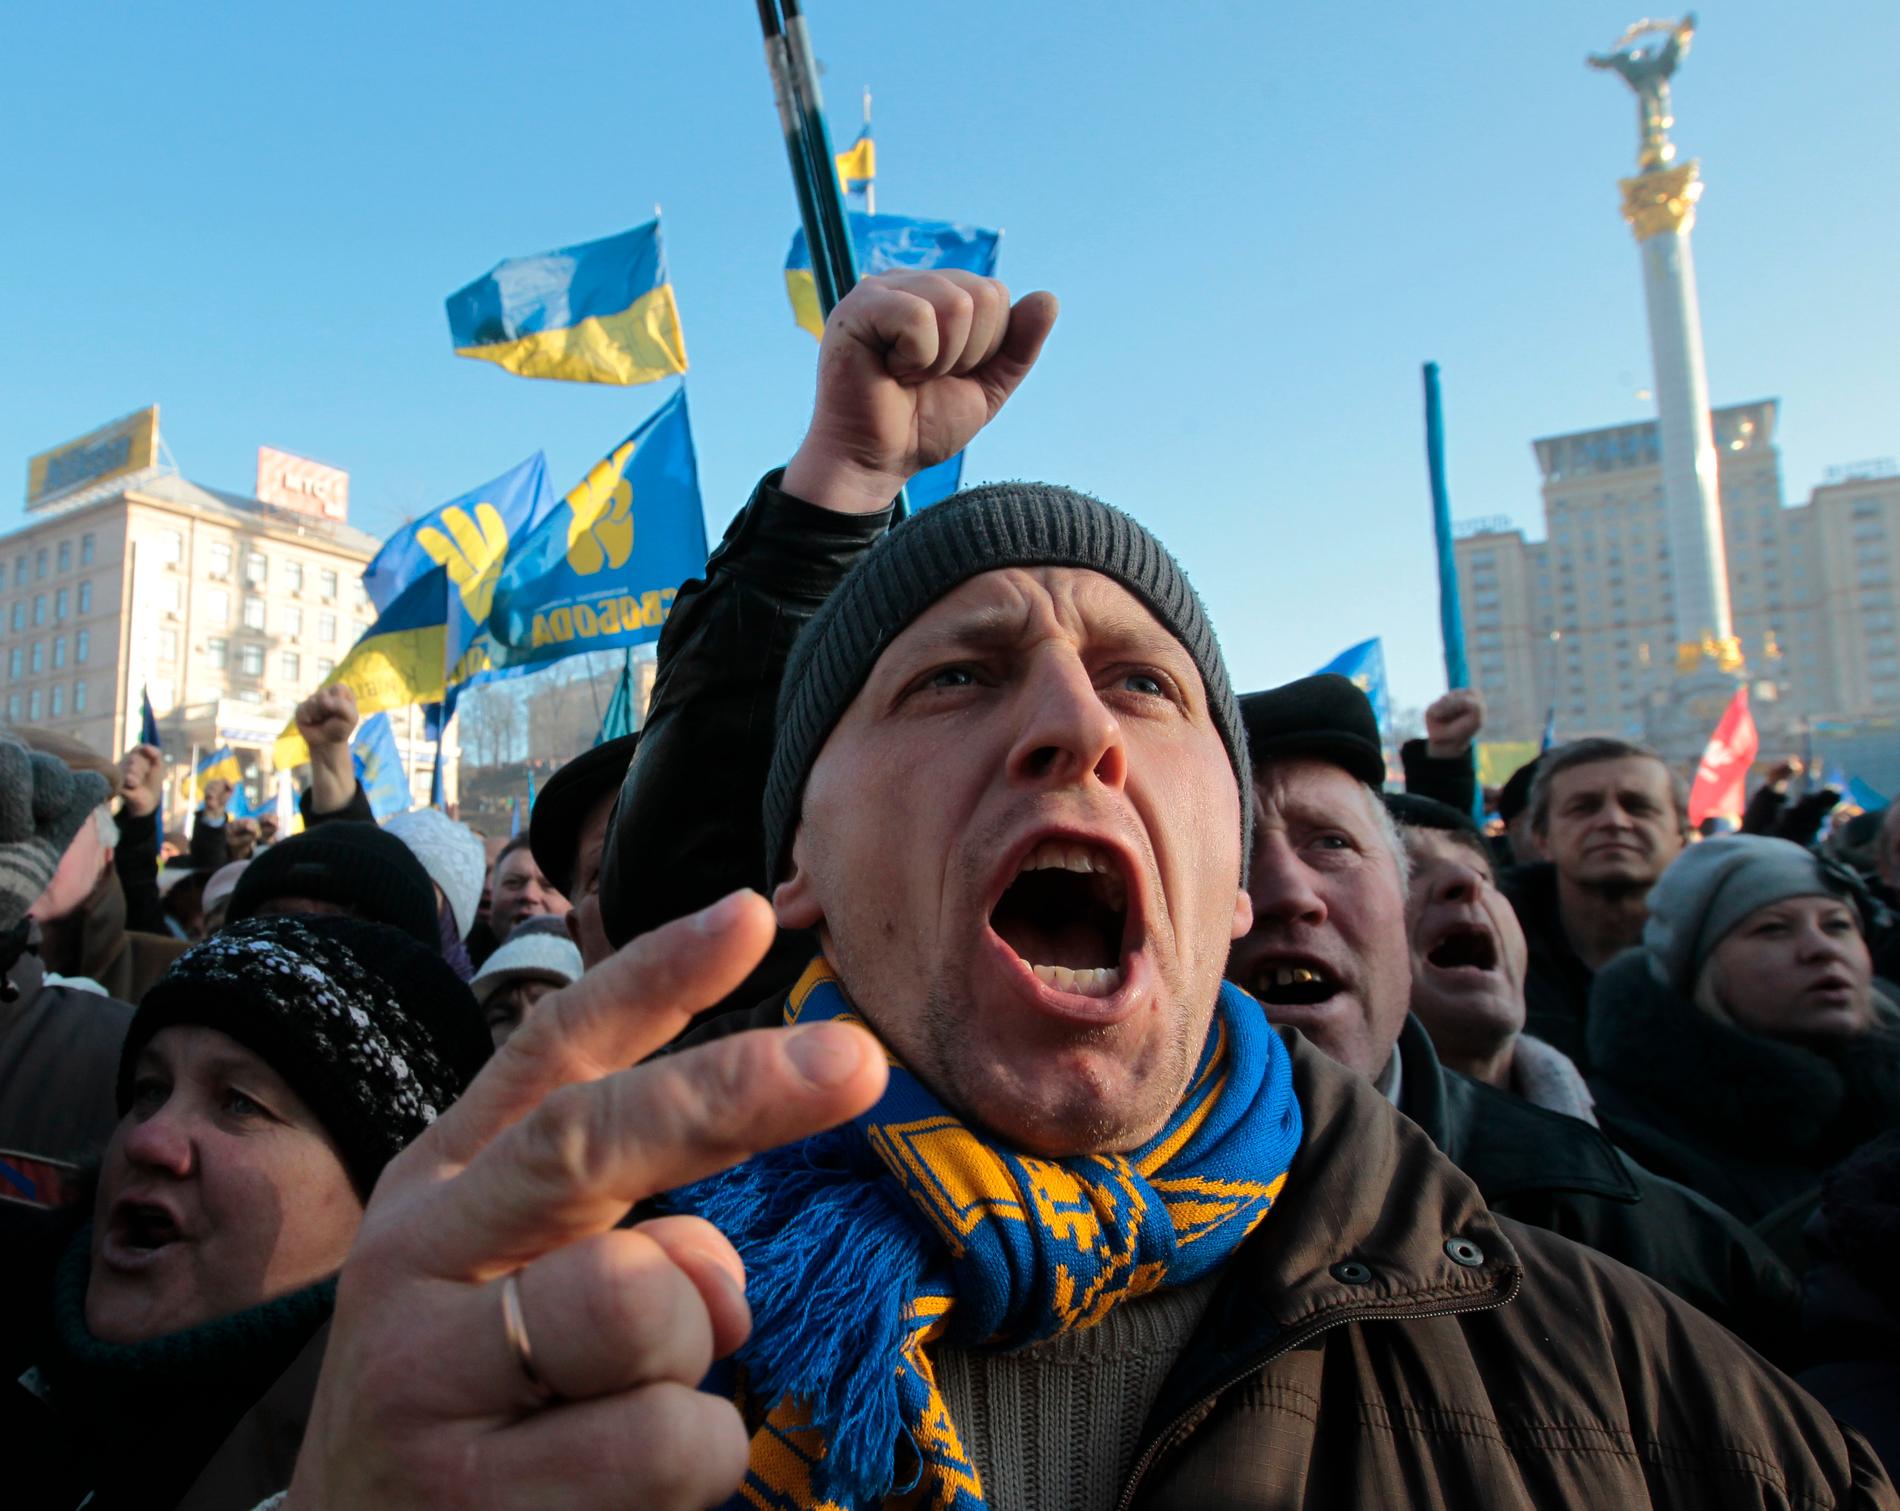 En man protesterar på Majdan, Kiev 2014.